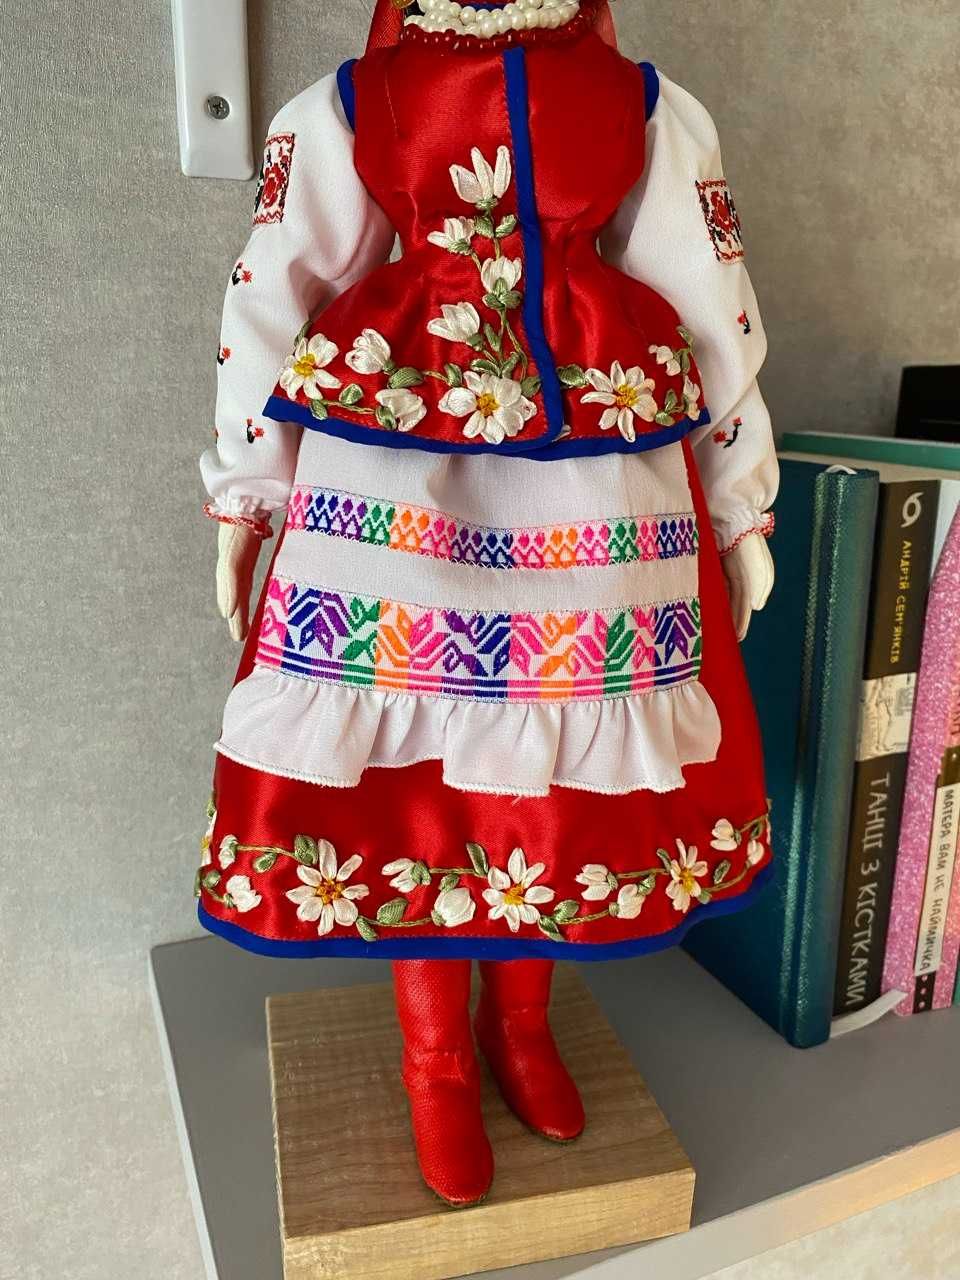 Лялька українка. Подарунок, сувенір, кукла для декору